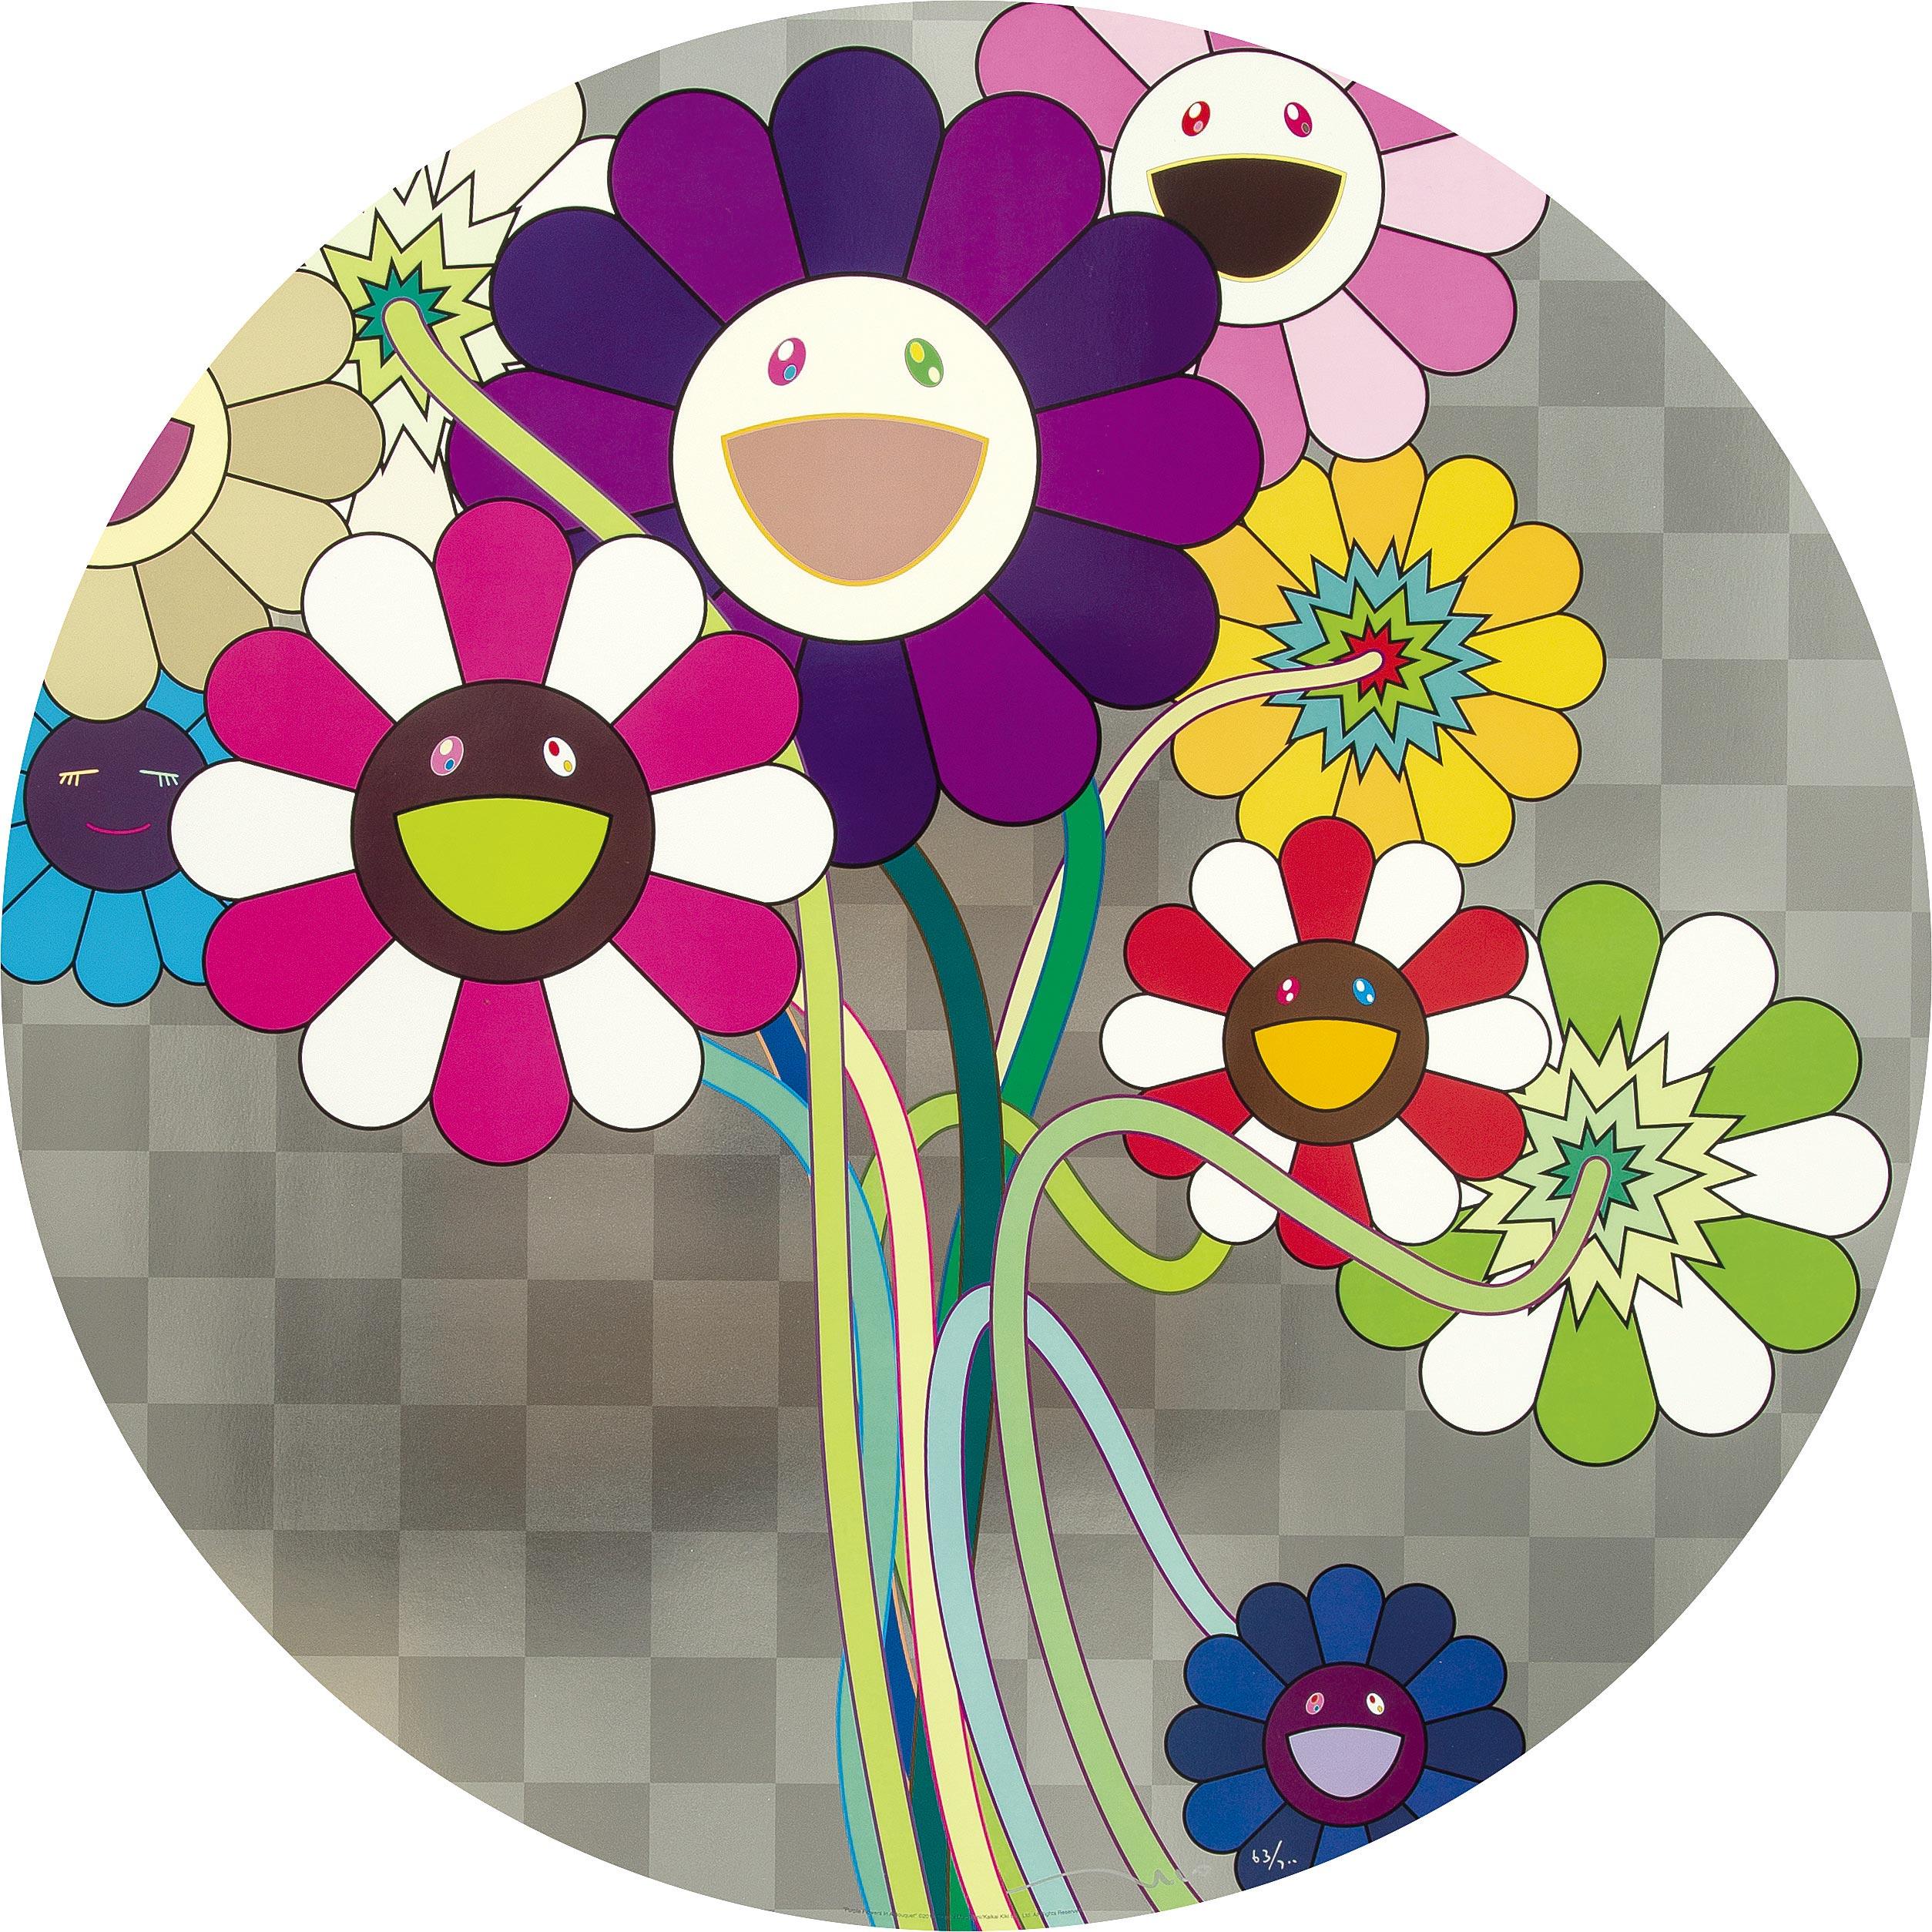 Lila Blumen in einem Strauß (2010) von Takashi Murakami
Offsetdruck auf gewebtem Papier, Kaltfolienprägung, Hochglanzlackierung
Herausgegeben von Kaikai Kiki Co, Ltd. in Tokio
28 im Durchmesser
71 cm Durchmesser
Ausgabe 63/300

Takashi Murakami ist